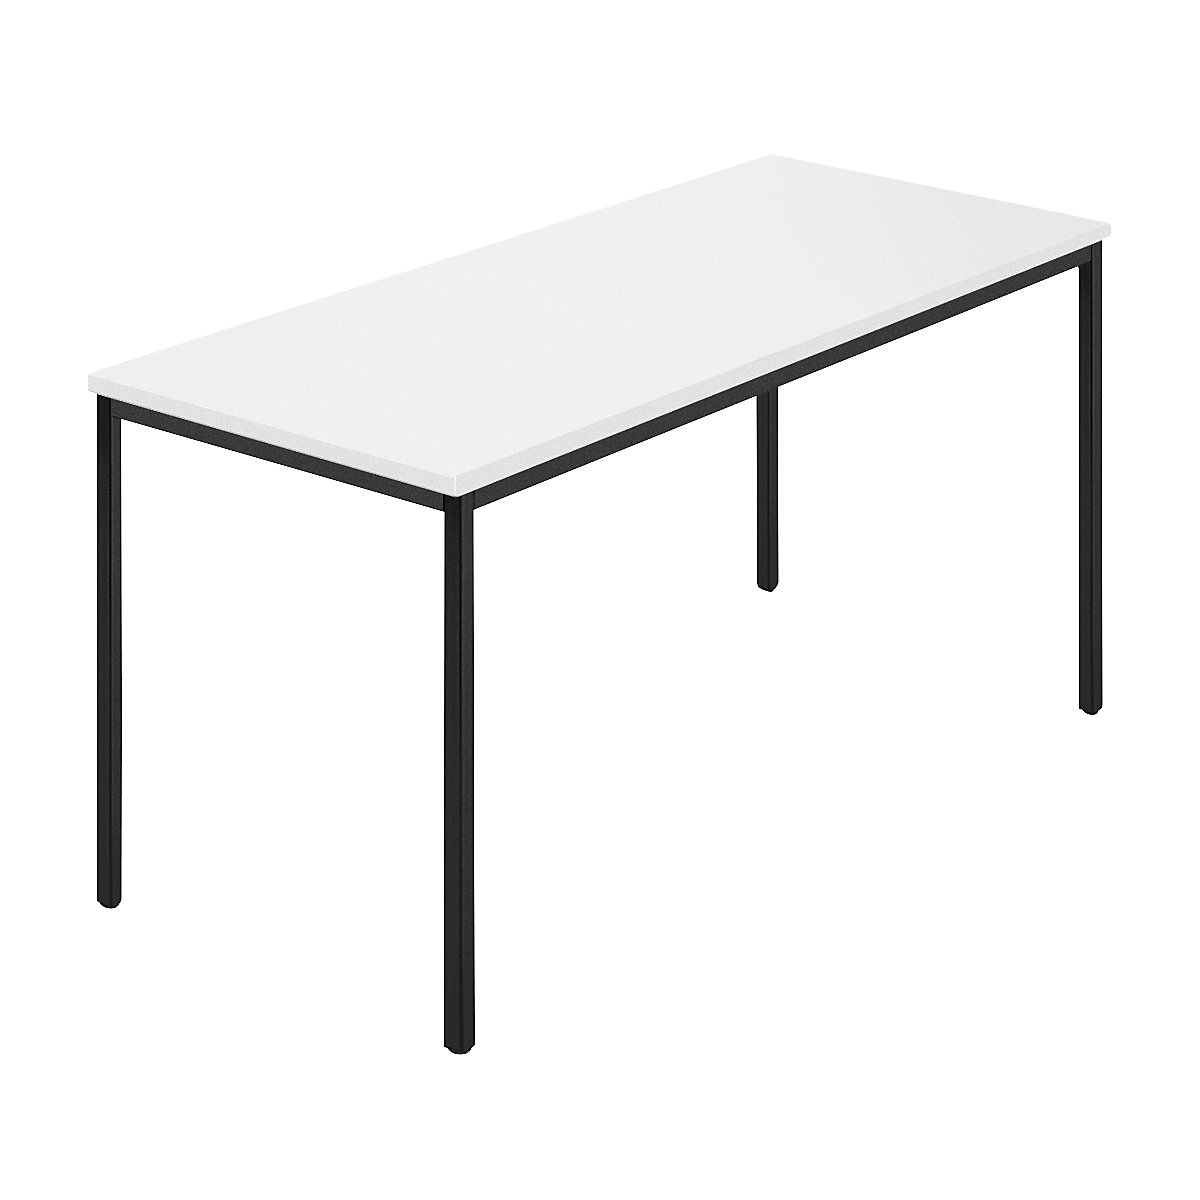 Table rectangulaire, tube carré plastifié, l x p 1400 x 700 mm, blanc / anthracite-7